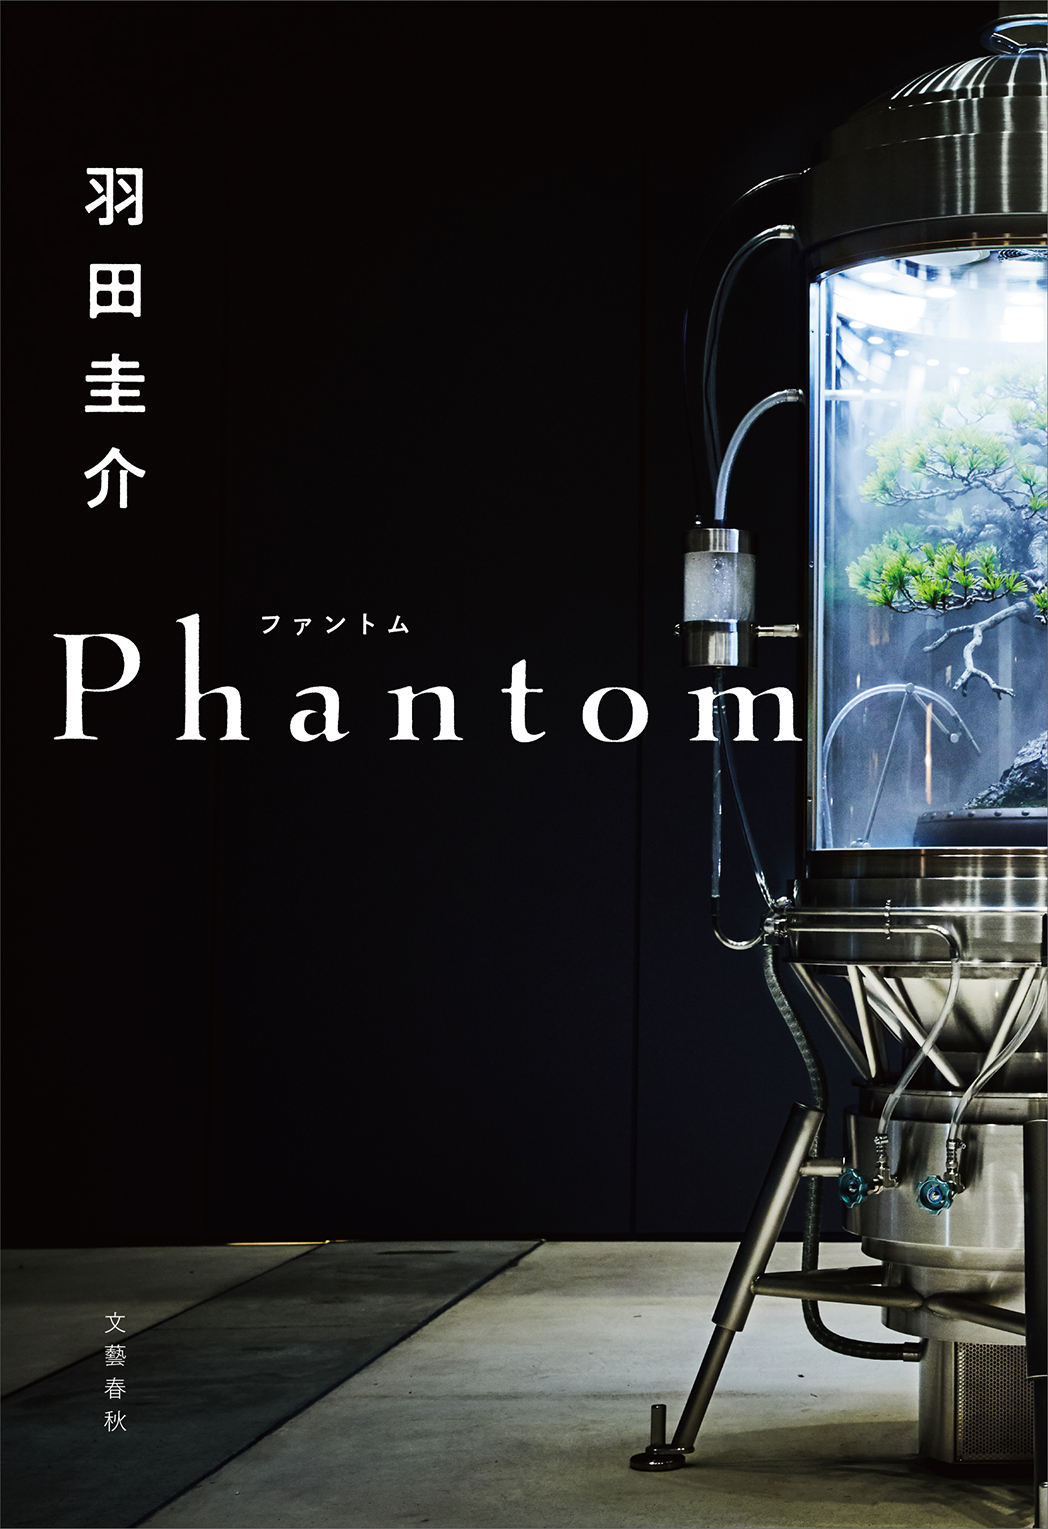 羽田圭介さん最新刊 Phantom 発売記念 21年7月13日 エキサイトニュース